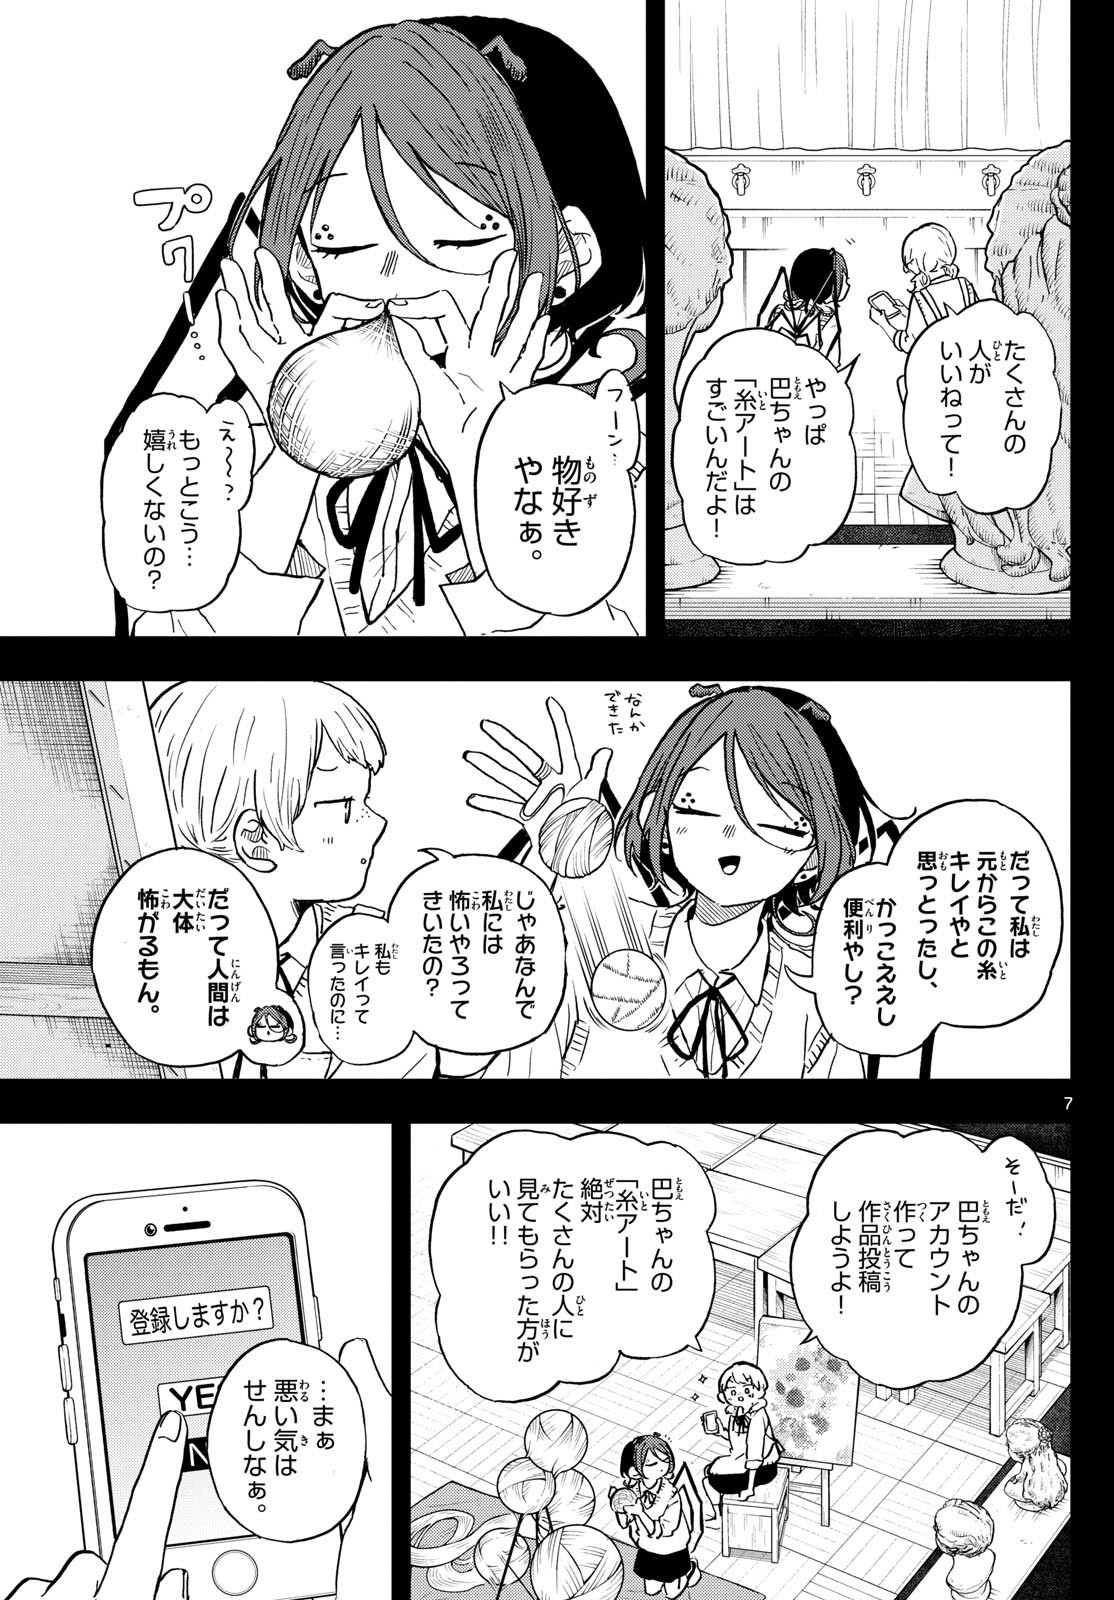 Omori Tsumiki to Kinichijou. - Chapter 31 - Page 7